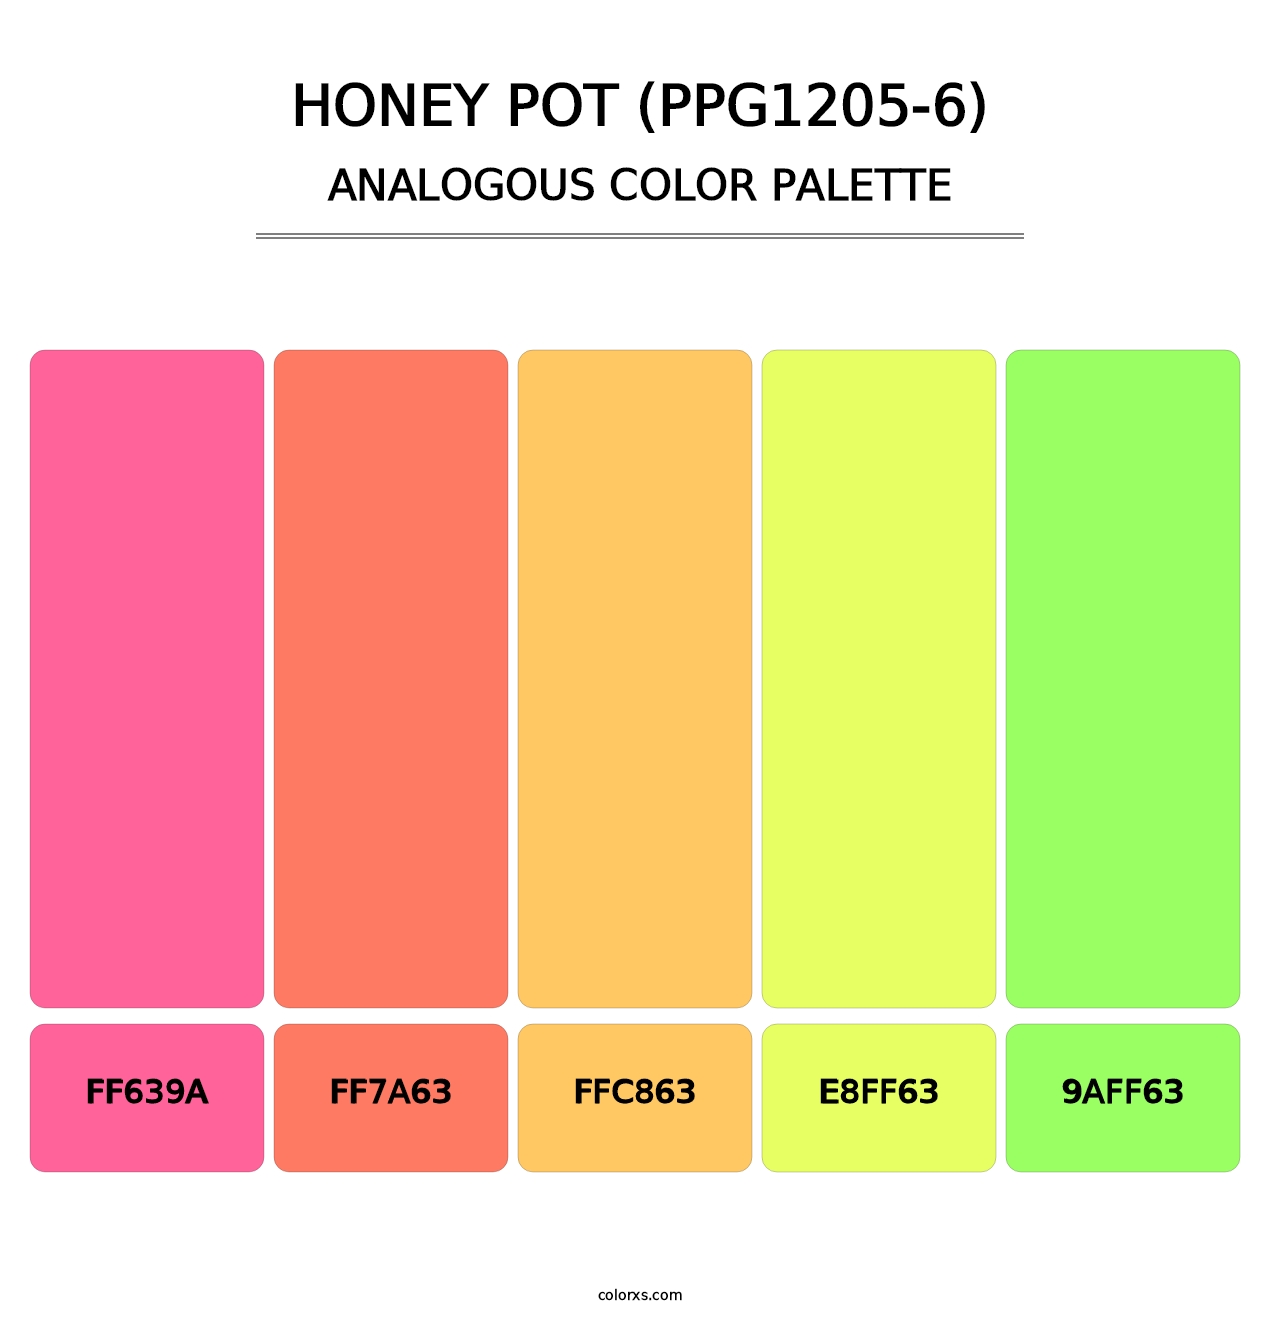 Honey Pot (PPG1205-6) - Analogous Color Palette